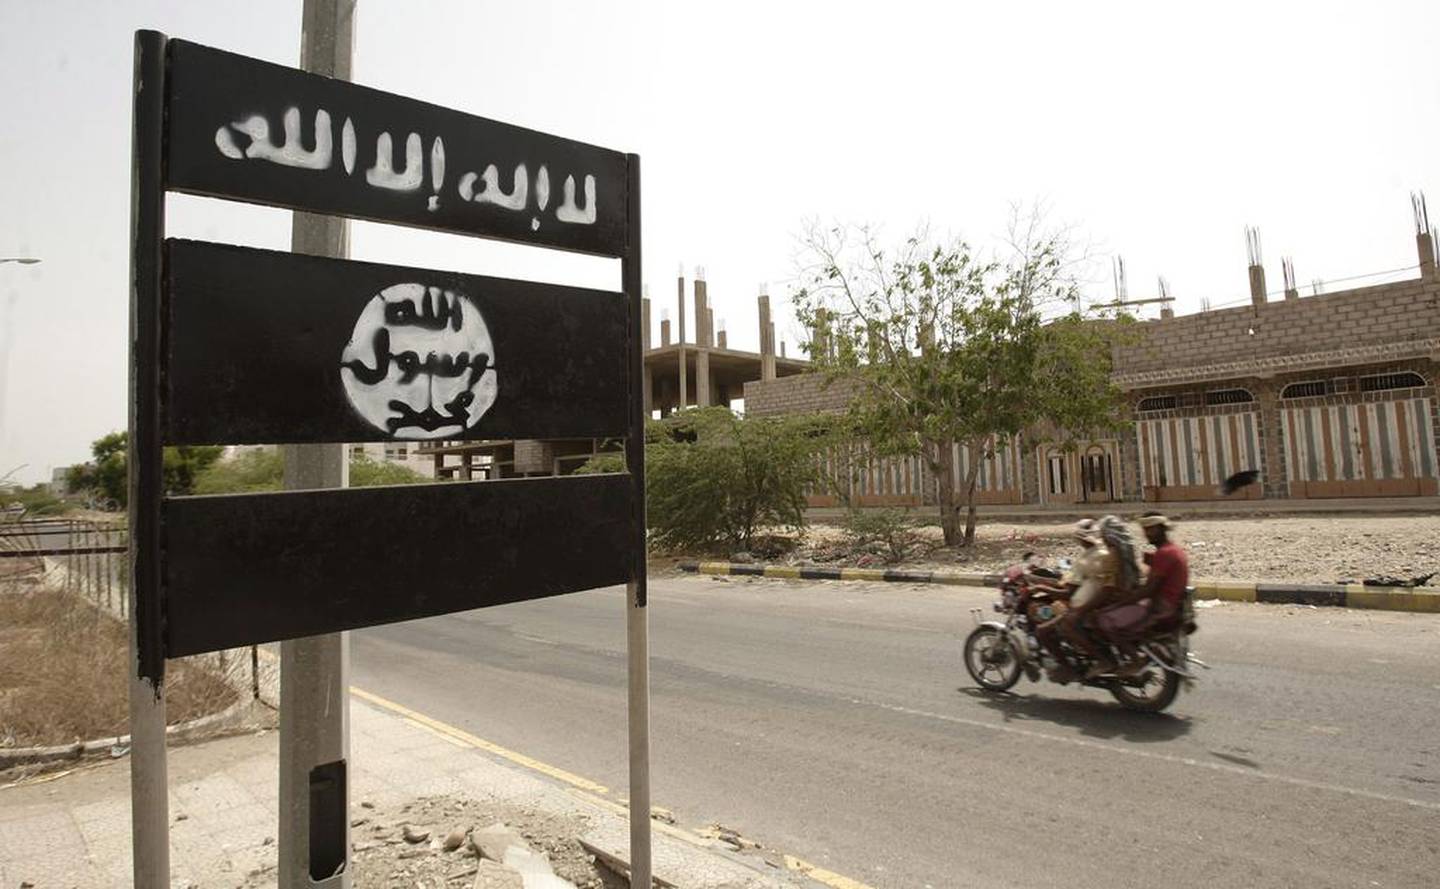 An Al Qaeda logo on a street sign in the town of Jaar in Yemen’s southern Abyan province, in 2012. AP